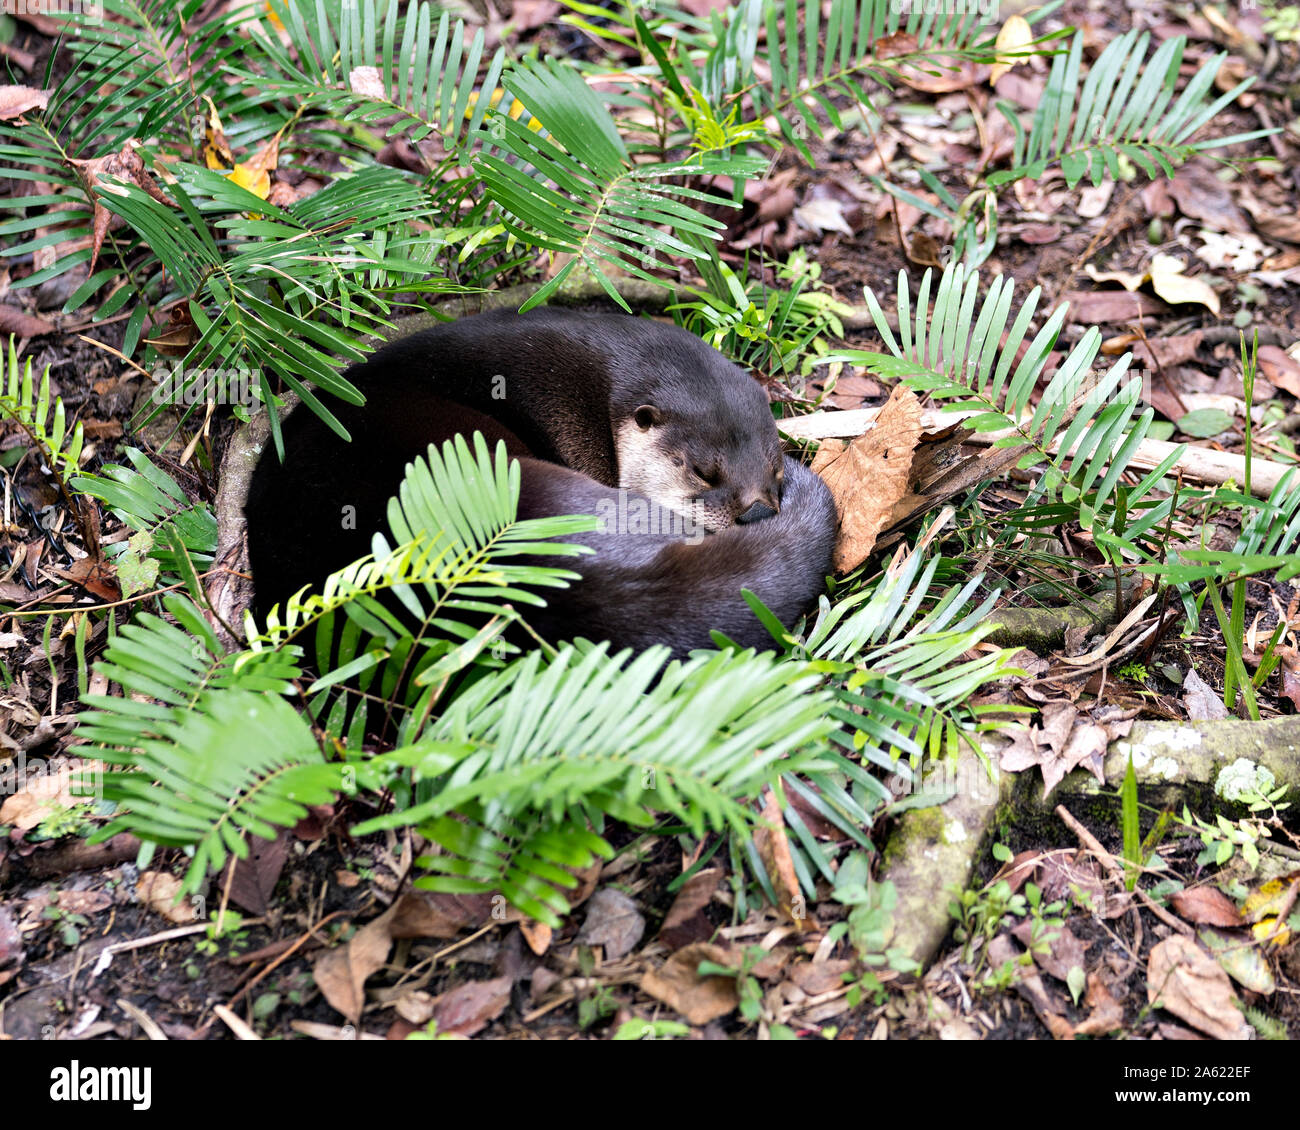 Otter schlafen in einem Bett von Laub und genießen die Umgebung und Umwelt. Stockfoto